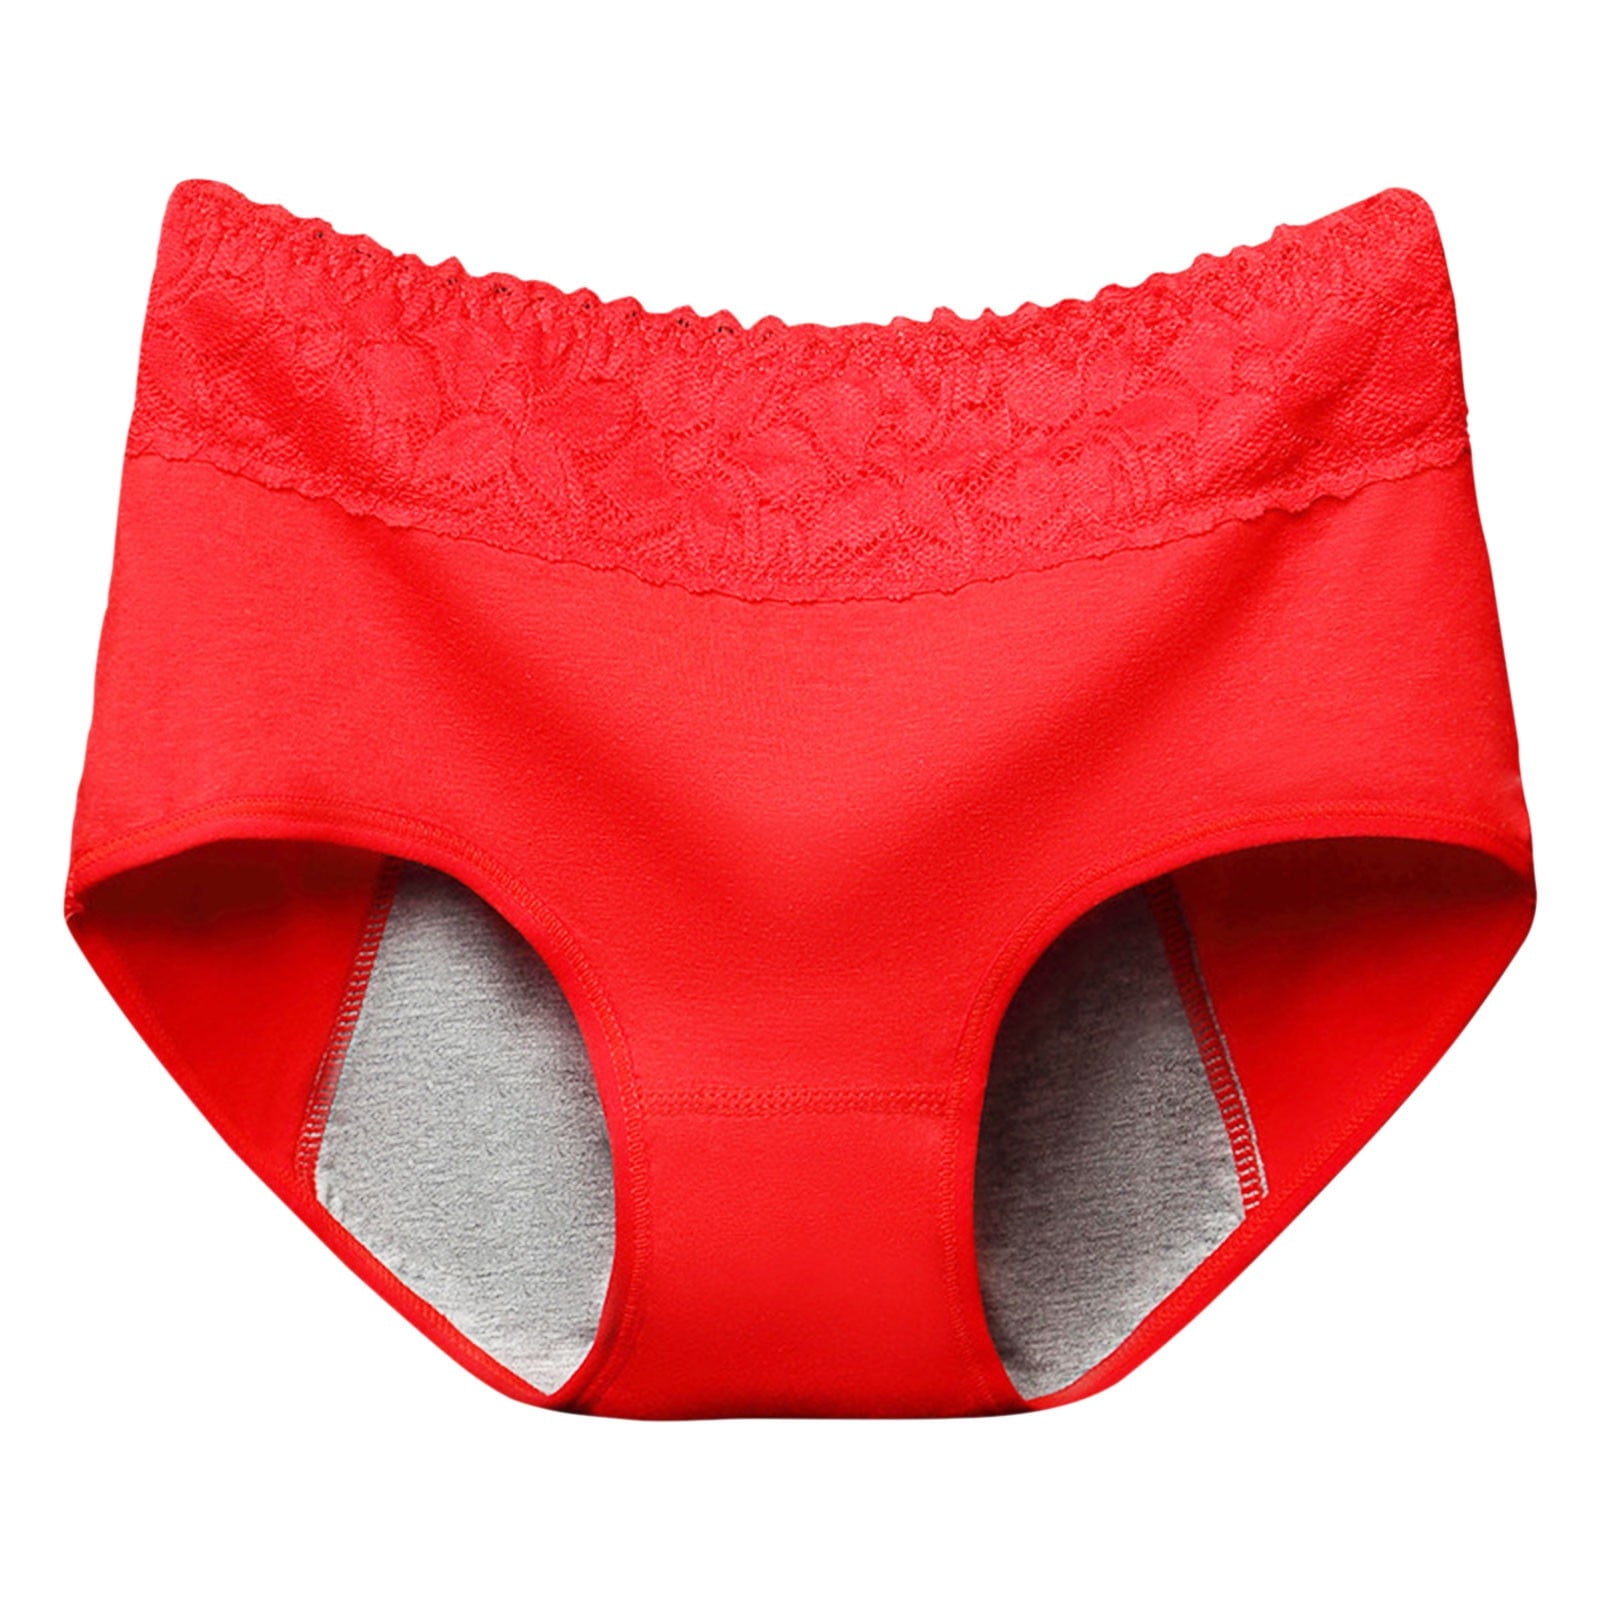 GWAABD Sweatproof Underwear Women Pants Anti Side Leakage Cotton Panties  Mid Waist Briefs Women Lace Women'S Underwear 